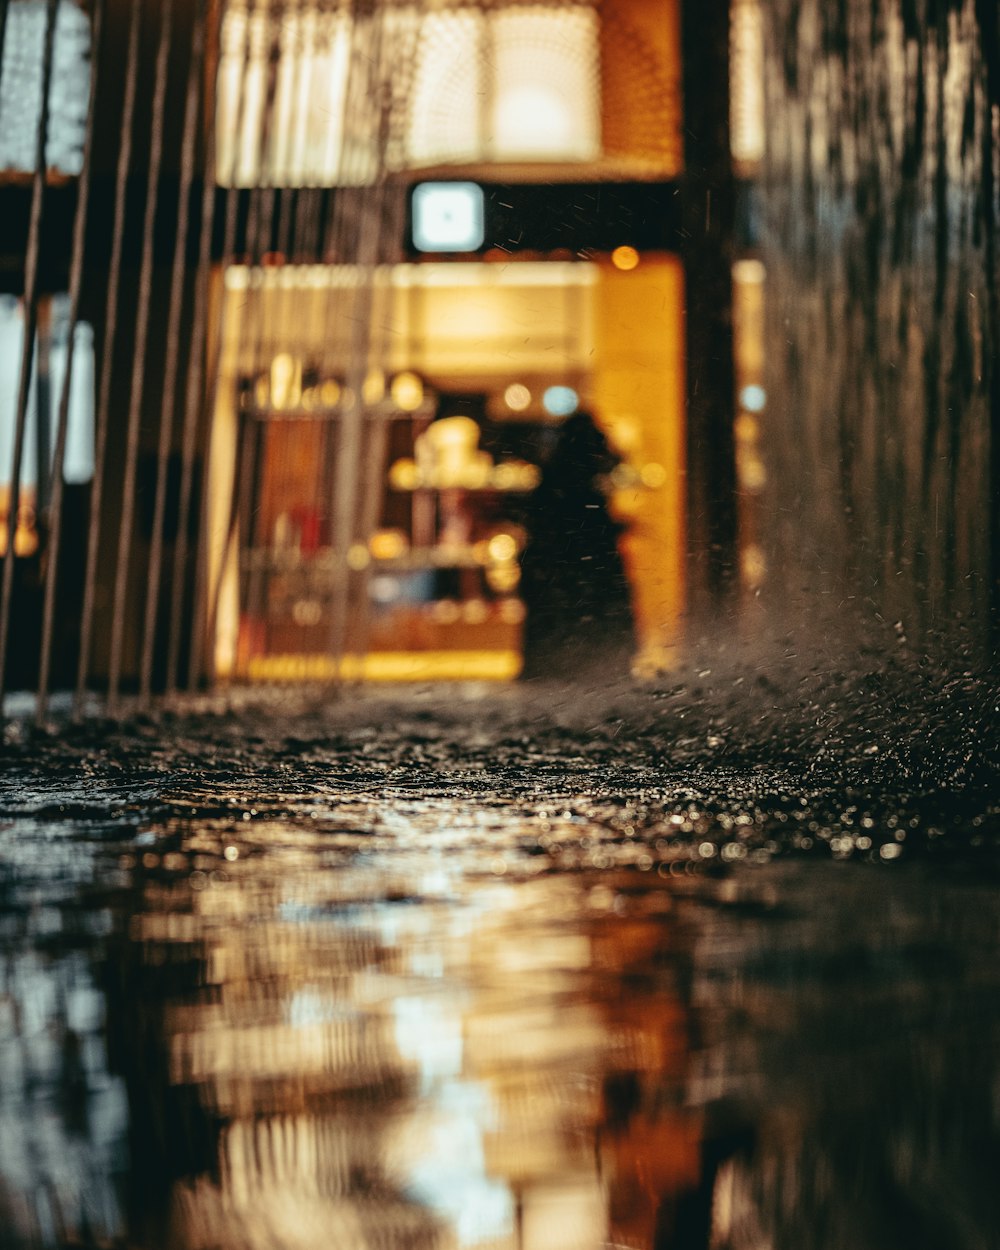 goccioline d'acqua sulla strada bagnata durante la notte